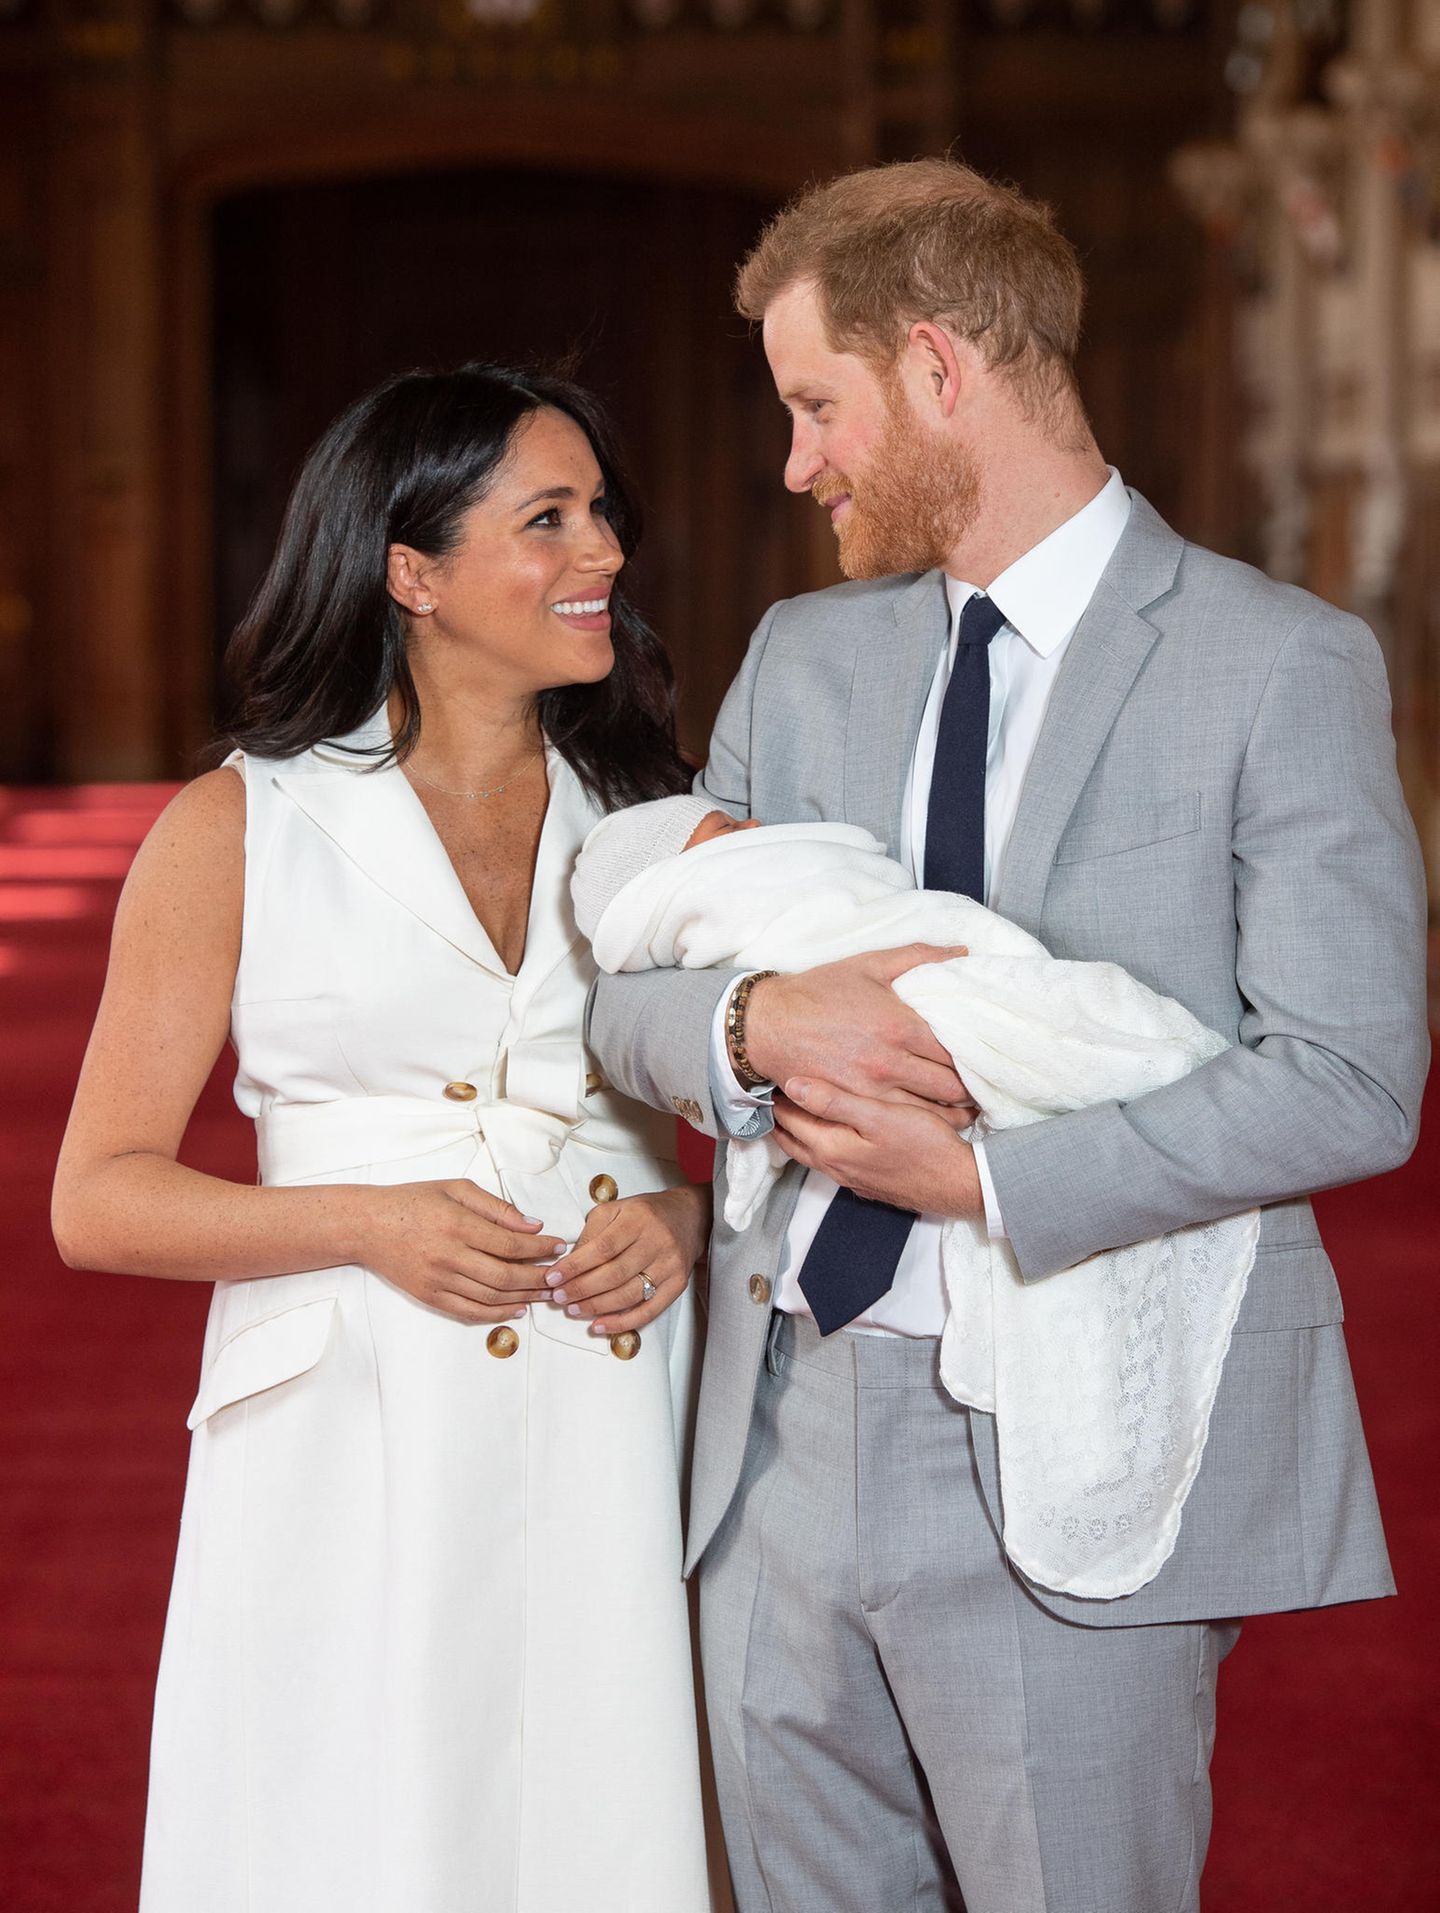 Meghan, Kate und Co. 2019: Prinz Harry und Meghan Markle mit Baby Archie